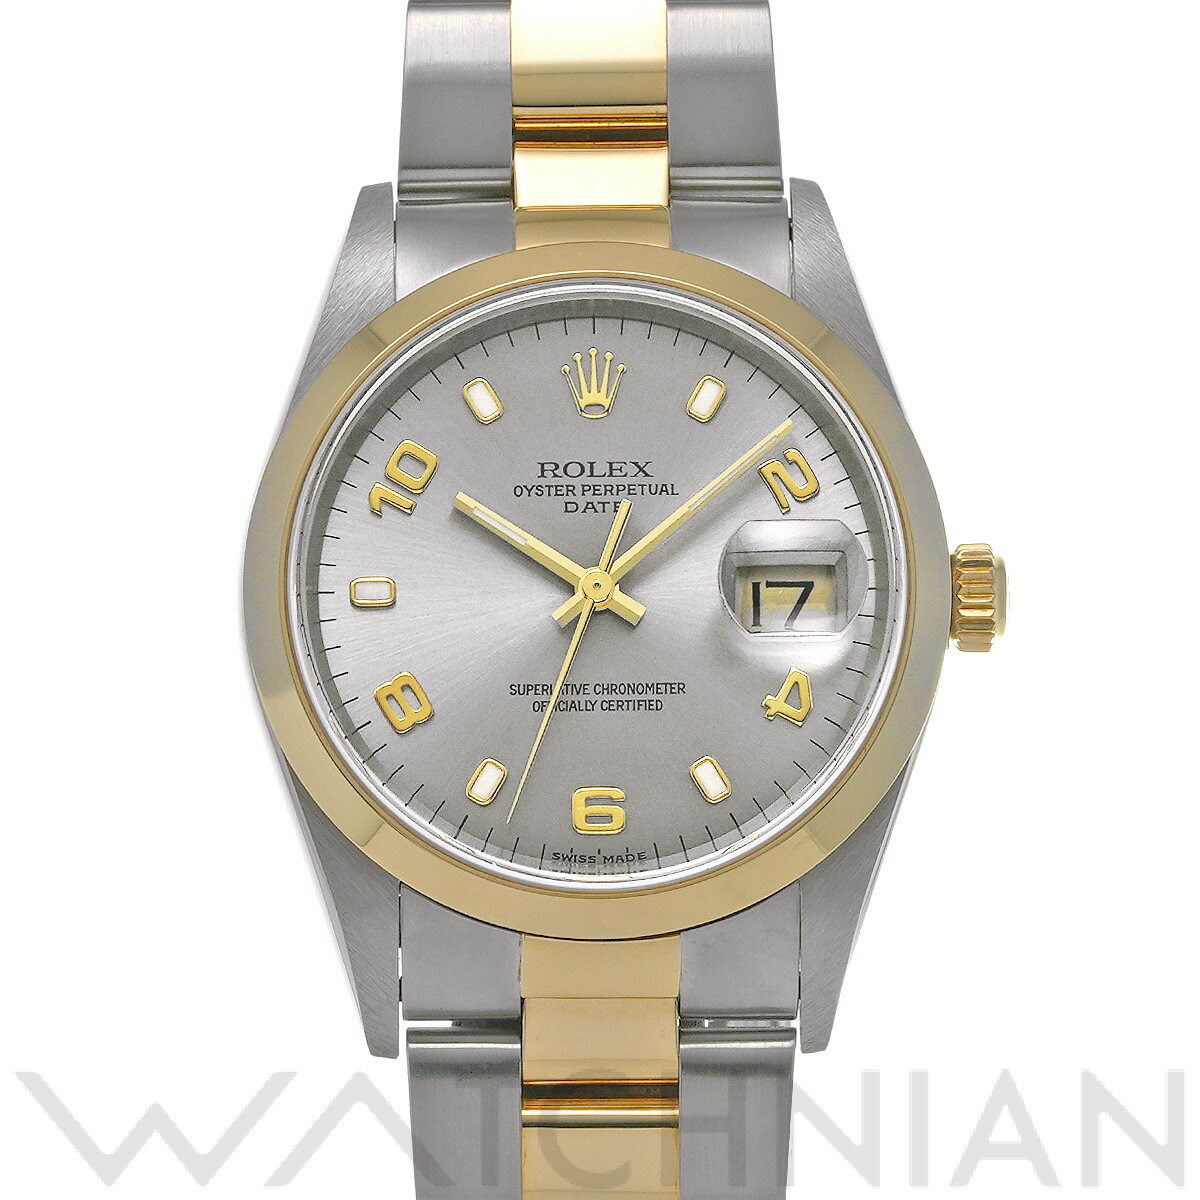 【ローン60回払い無金利】【中古】 ロレックス ROLEX オイスターパーペチュアル デイト 15203 A番(1999年頃製造) グレー メンズ 腕時計 ロレックス 時計 高級腕時計 ブランド